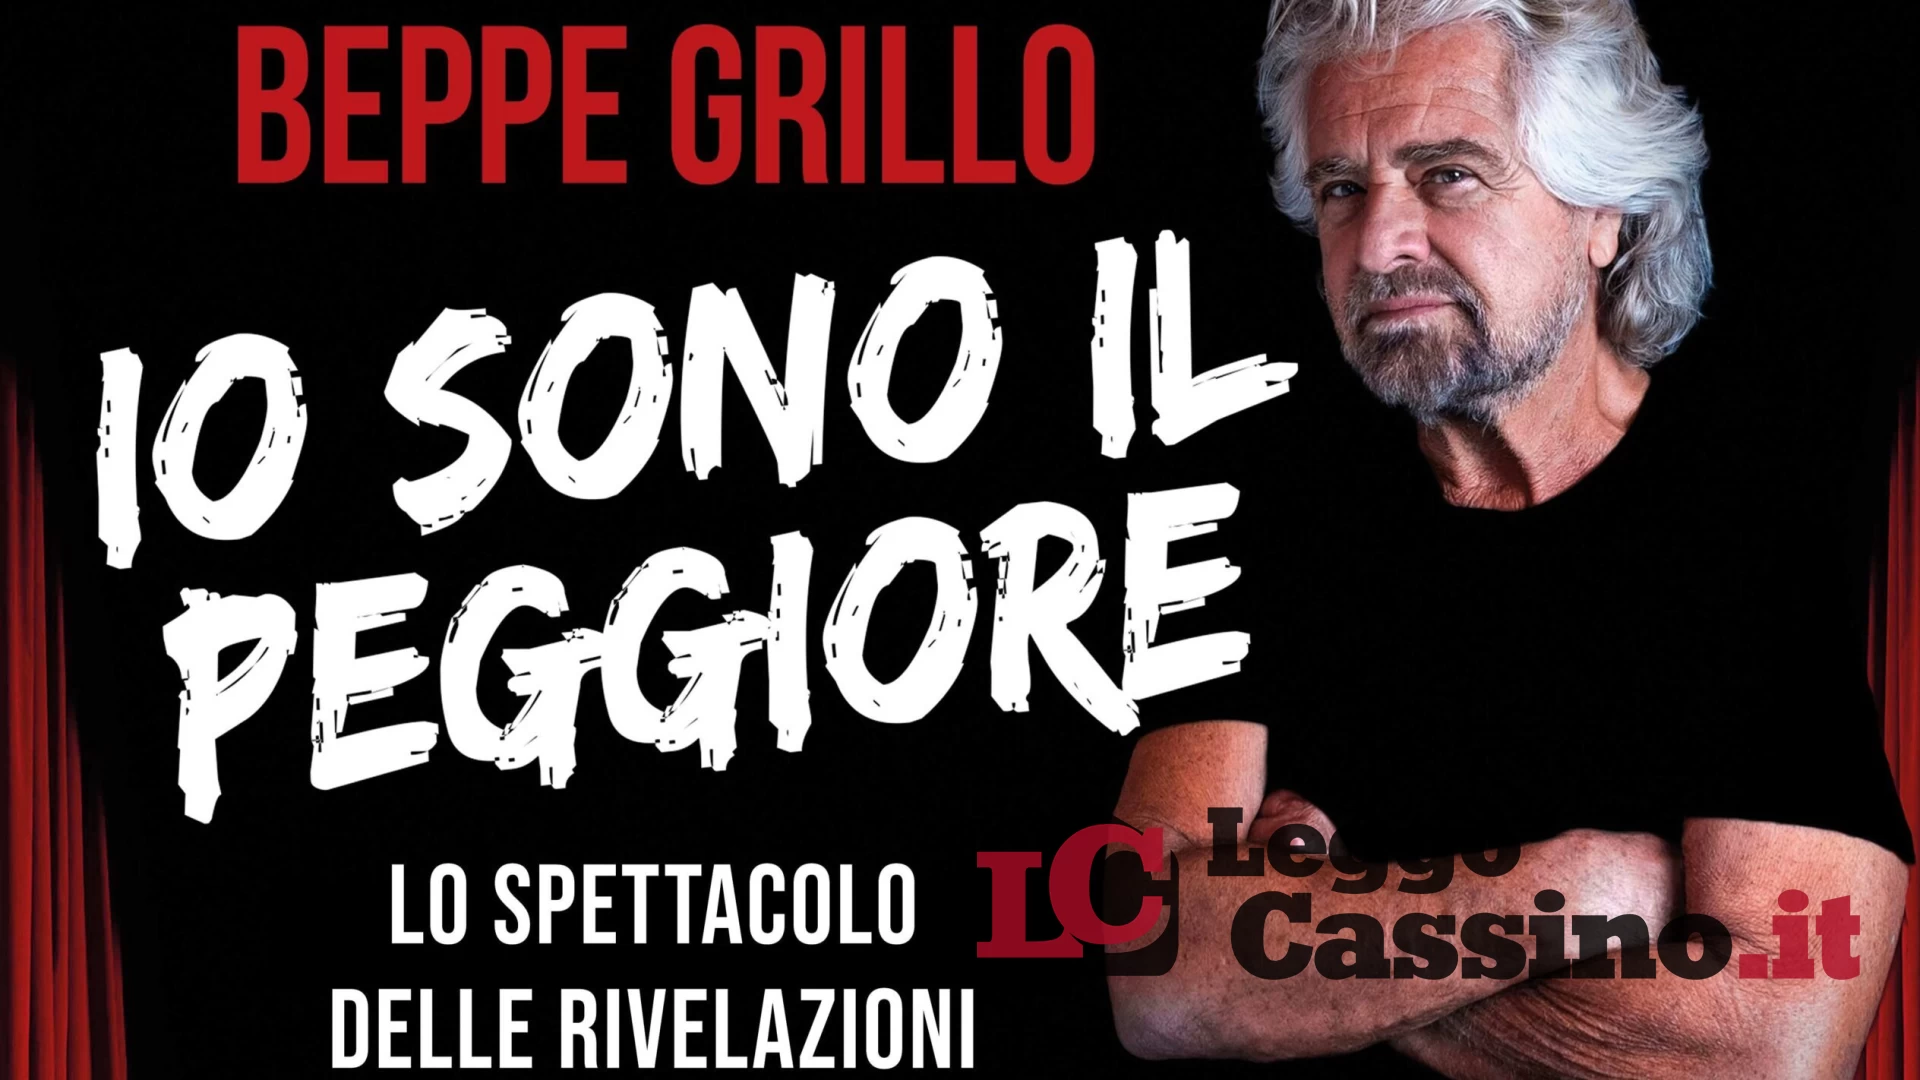 Al teatro Manzoni di Cassino arriva Beppe Grillo. Corsa ai biglietti